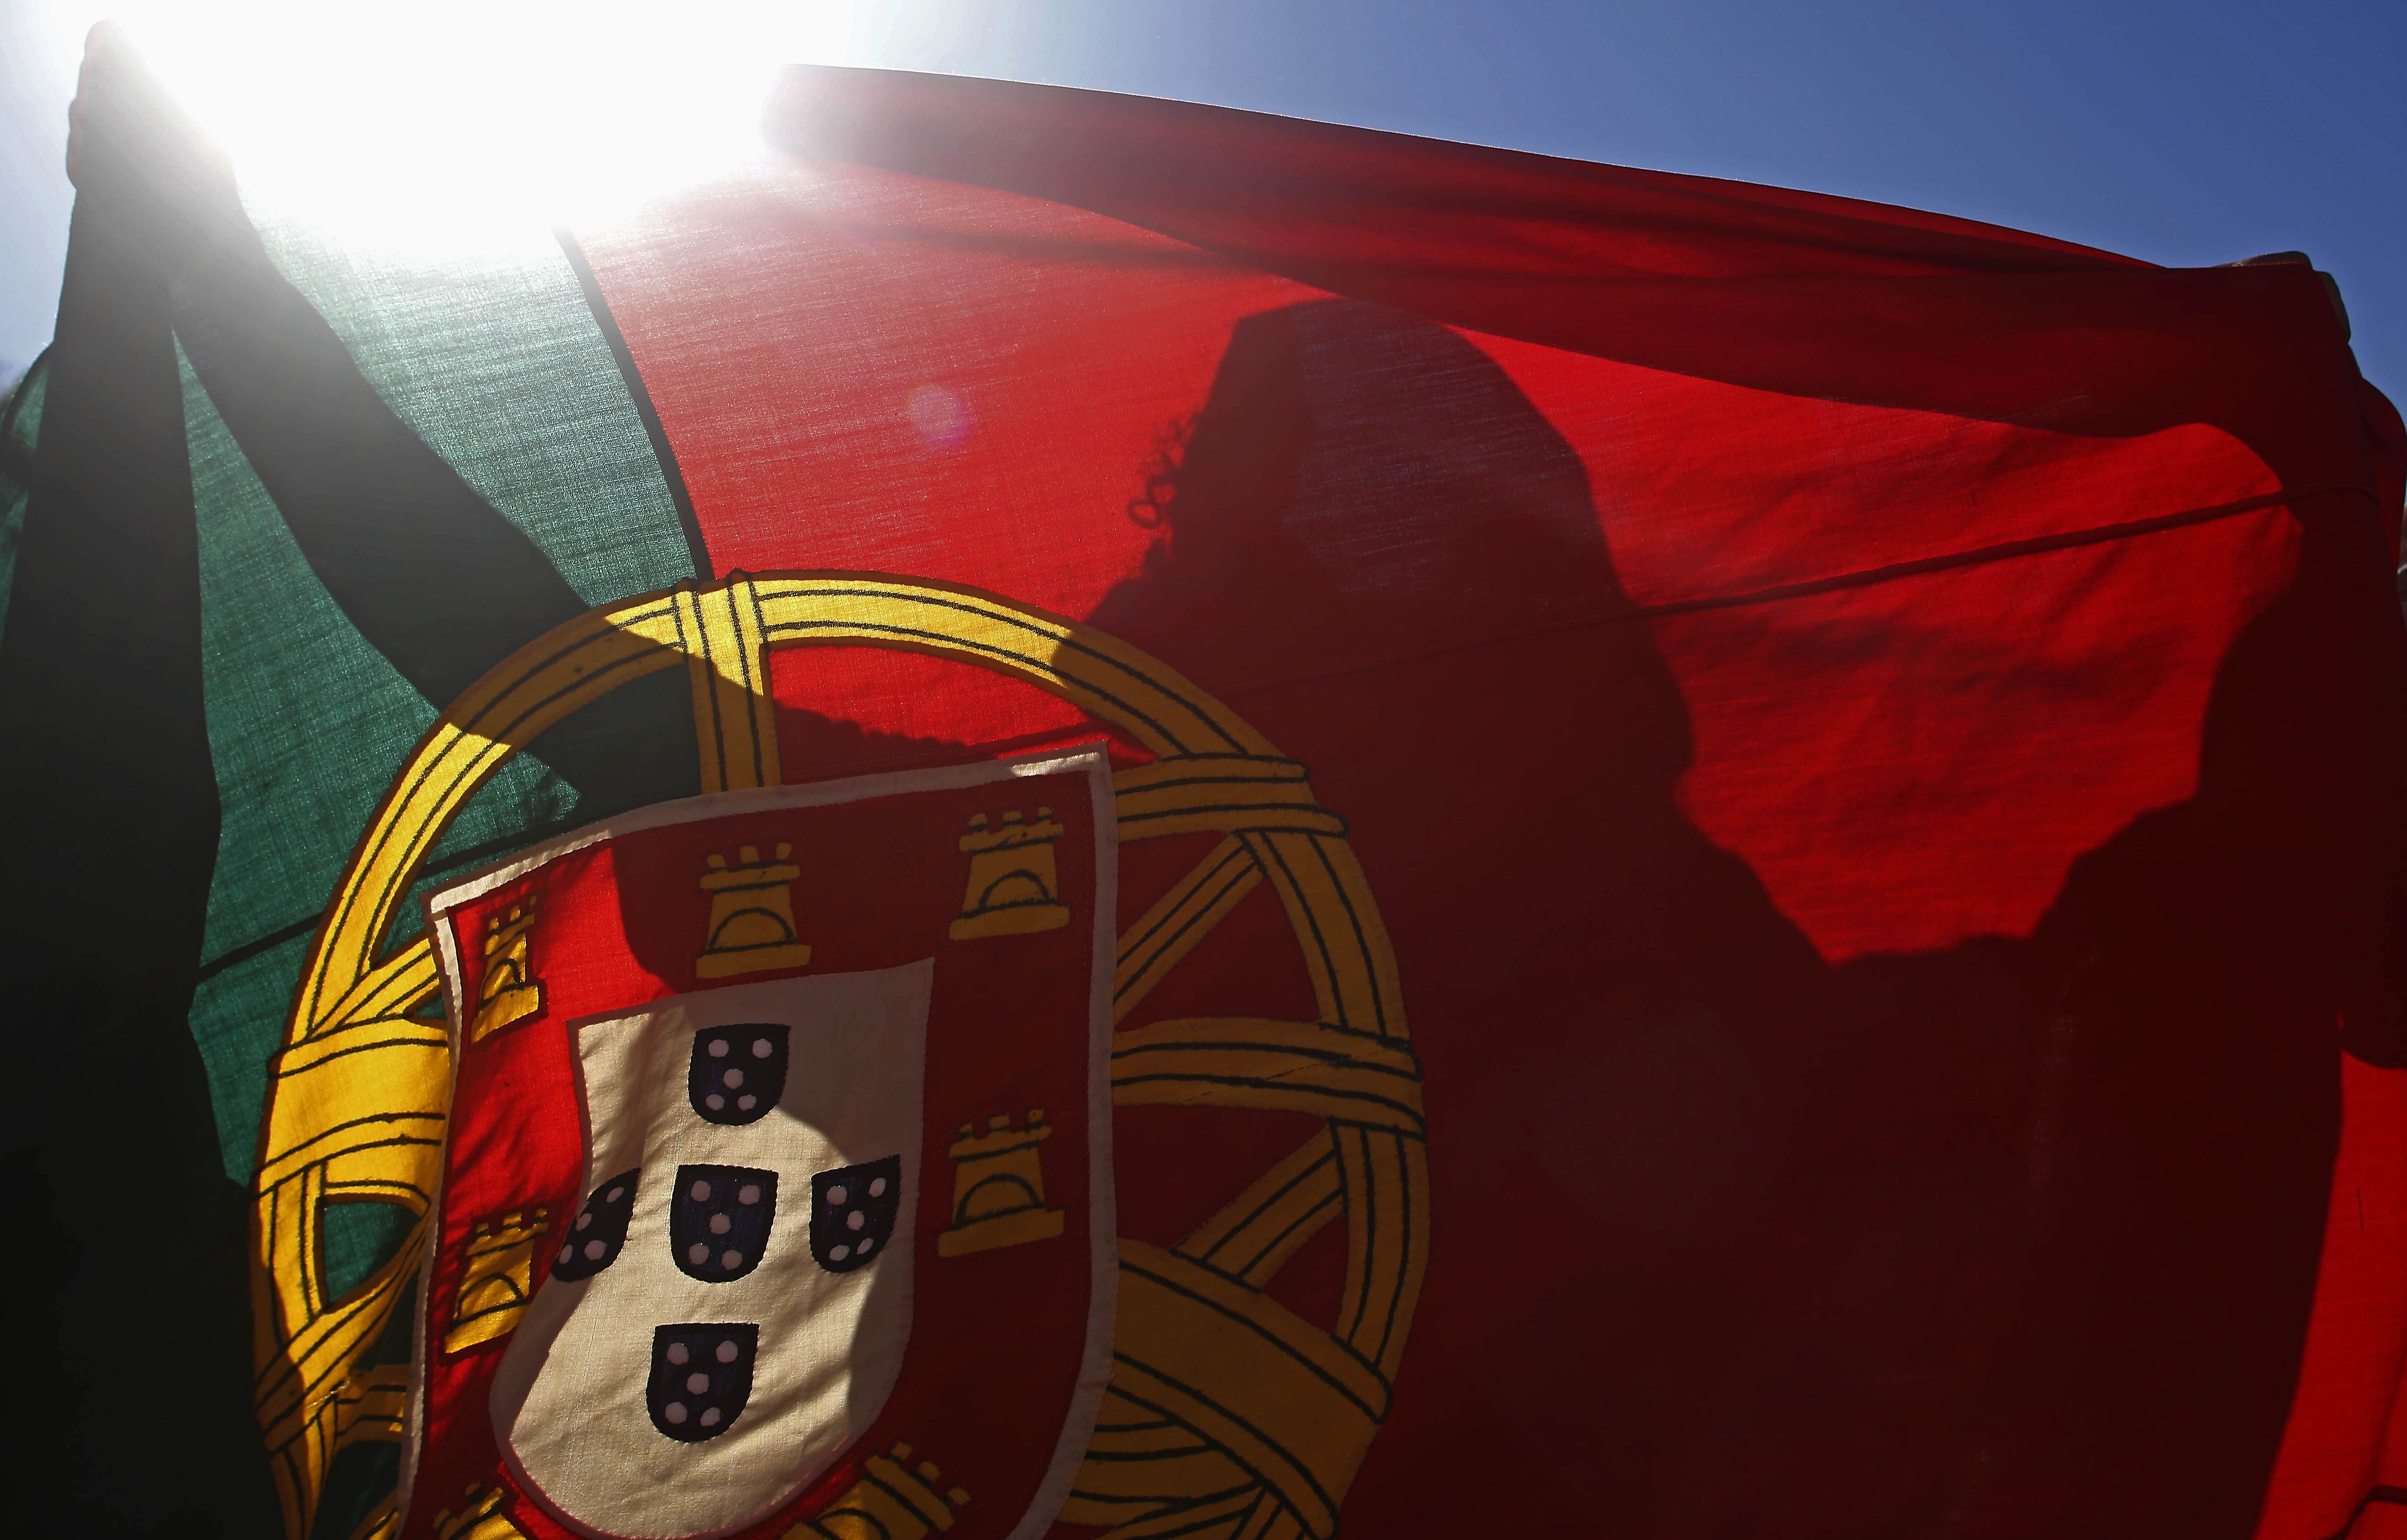 Μικρότερο ρυθμό ανάπτυξης προβλέπει το ΔΝΤ για την Πορτογαλία φέτος